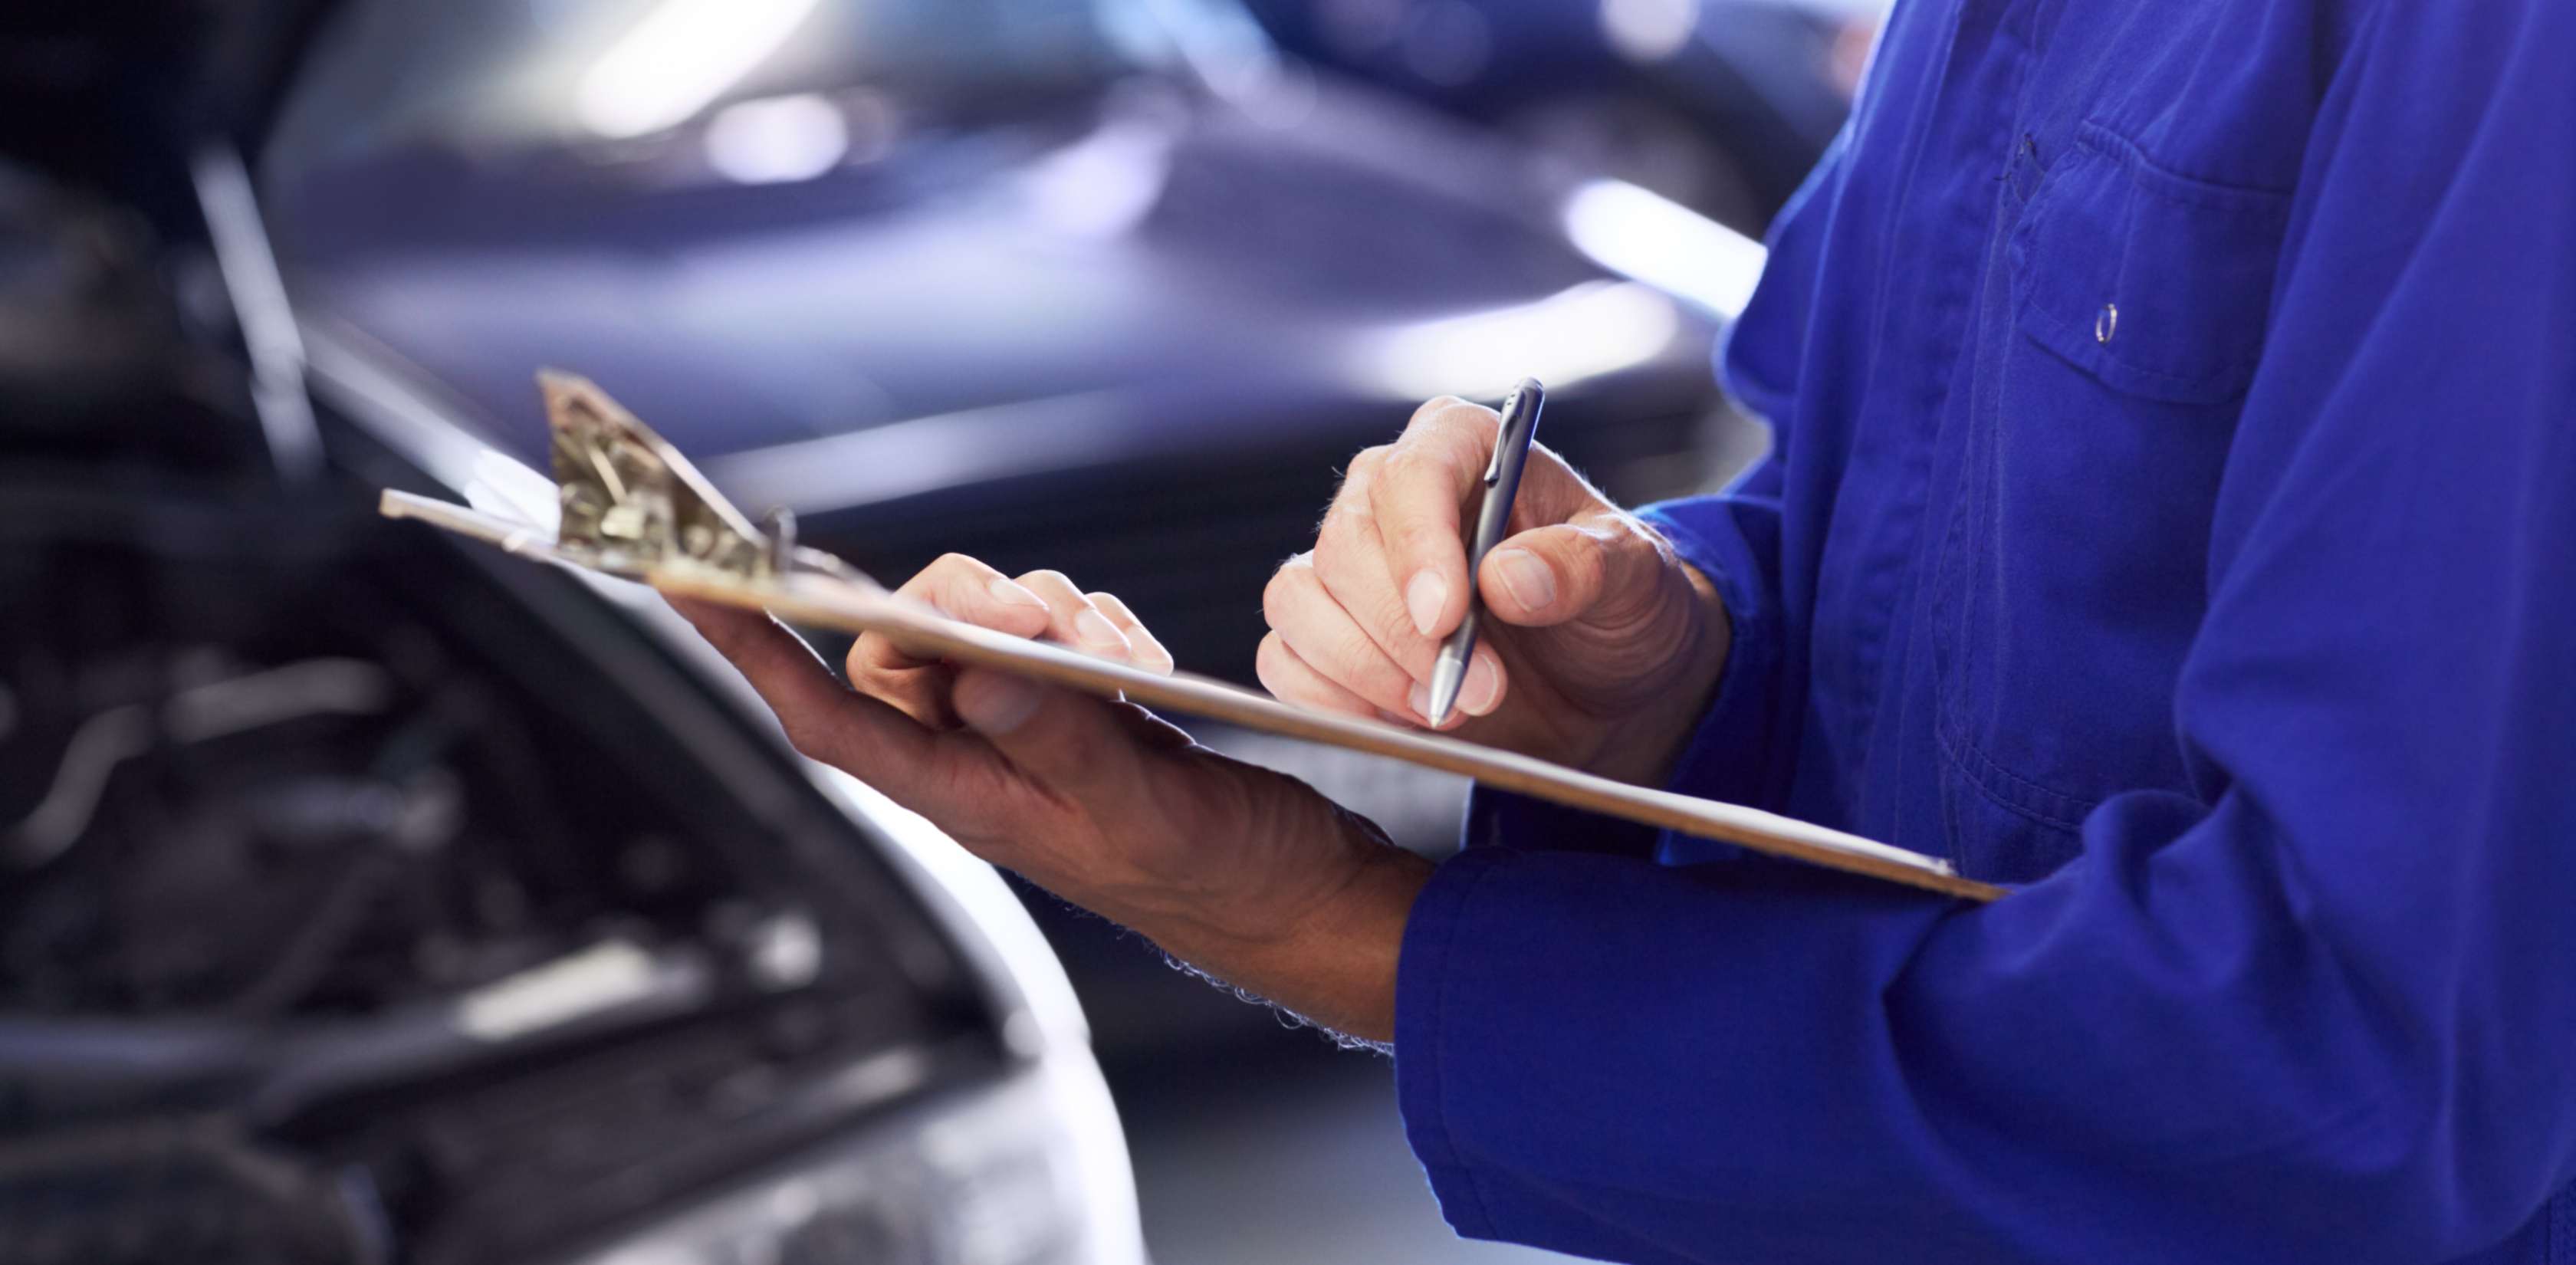 Gutachter in blauer Arbeitsmontur notiert Schäden an Auto, um Wiederbeschaffungswert zu berechnen